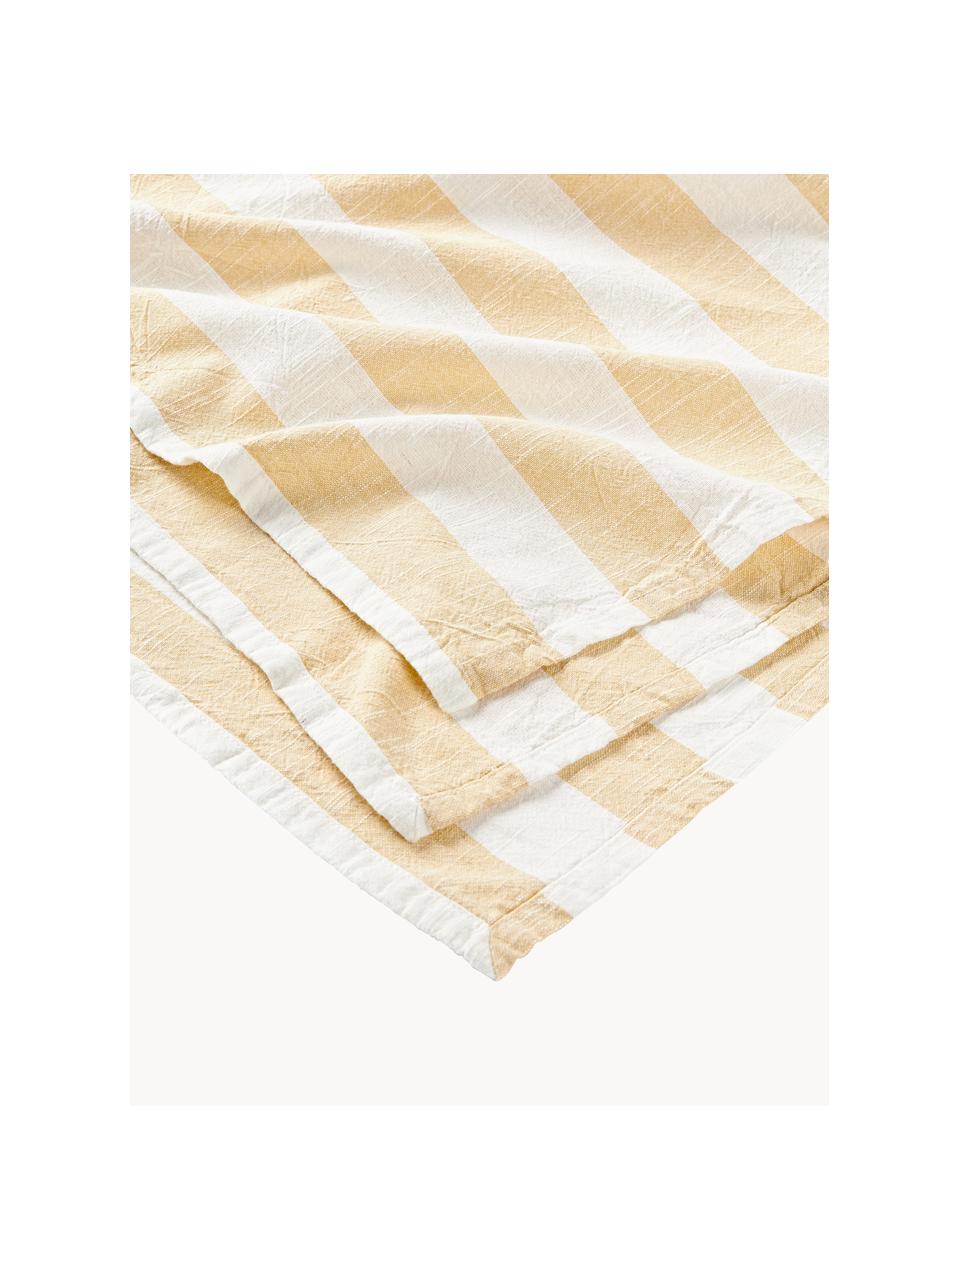 Gestreifte Tischdecke Strip, 100 % Baumwolle, Weiß, Hellgelb, 6-8 Personen (B 140 x L 200 cm)